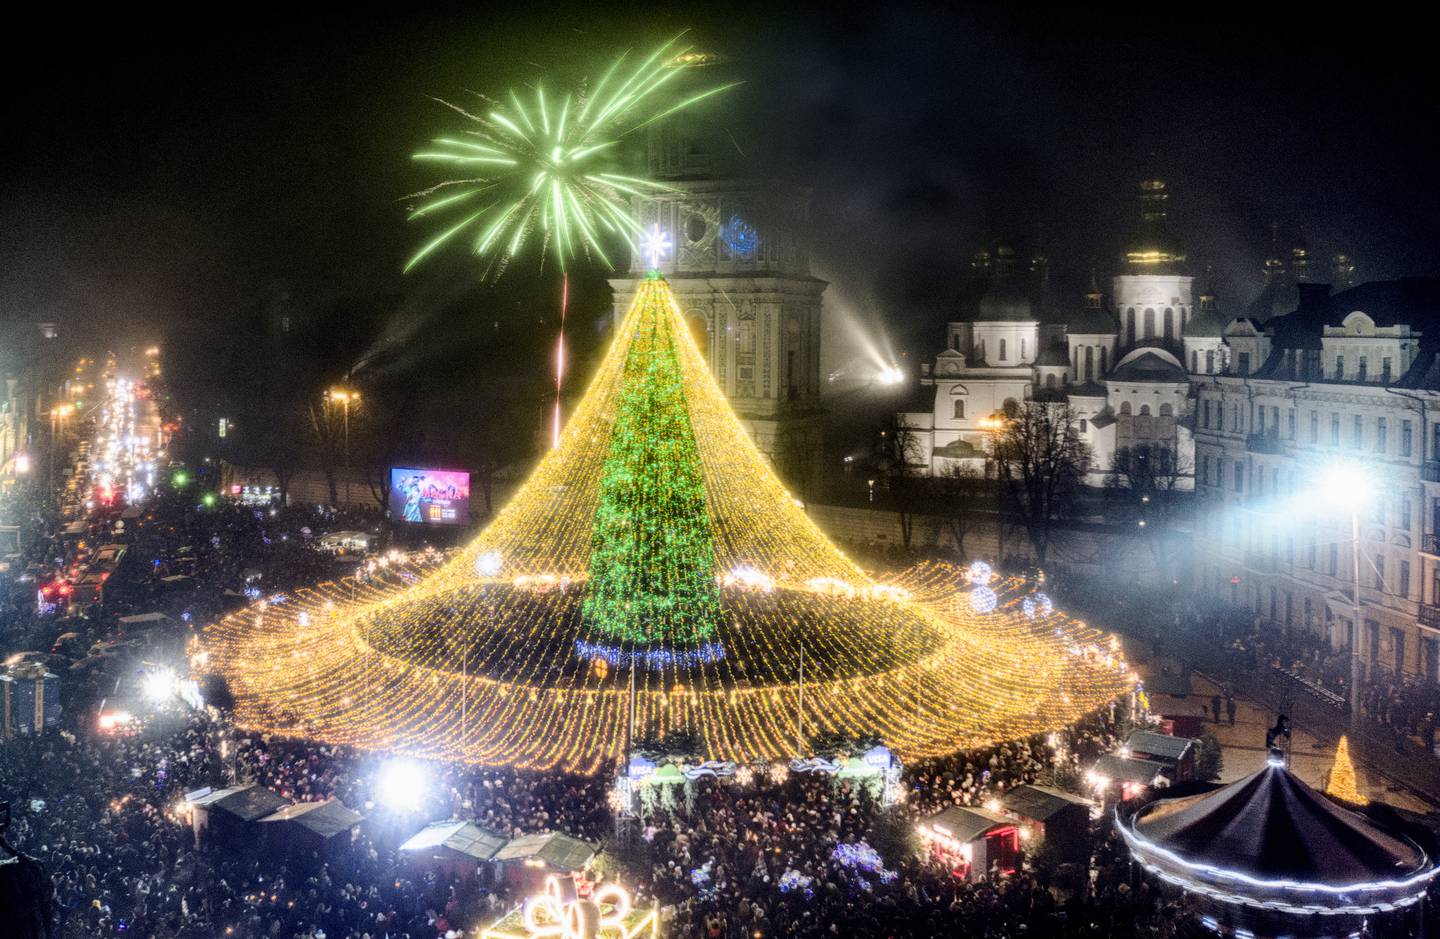 Slik var Kyiv julepyntet i 2021. Juletrær blir det også i år, men denne gang uten lys, sier byens borgermester.